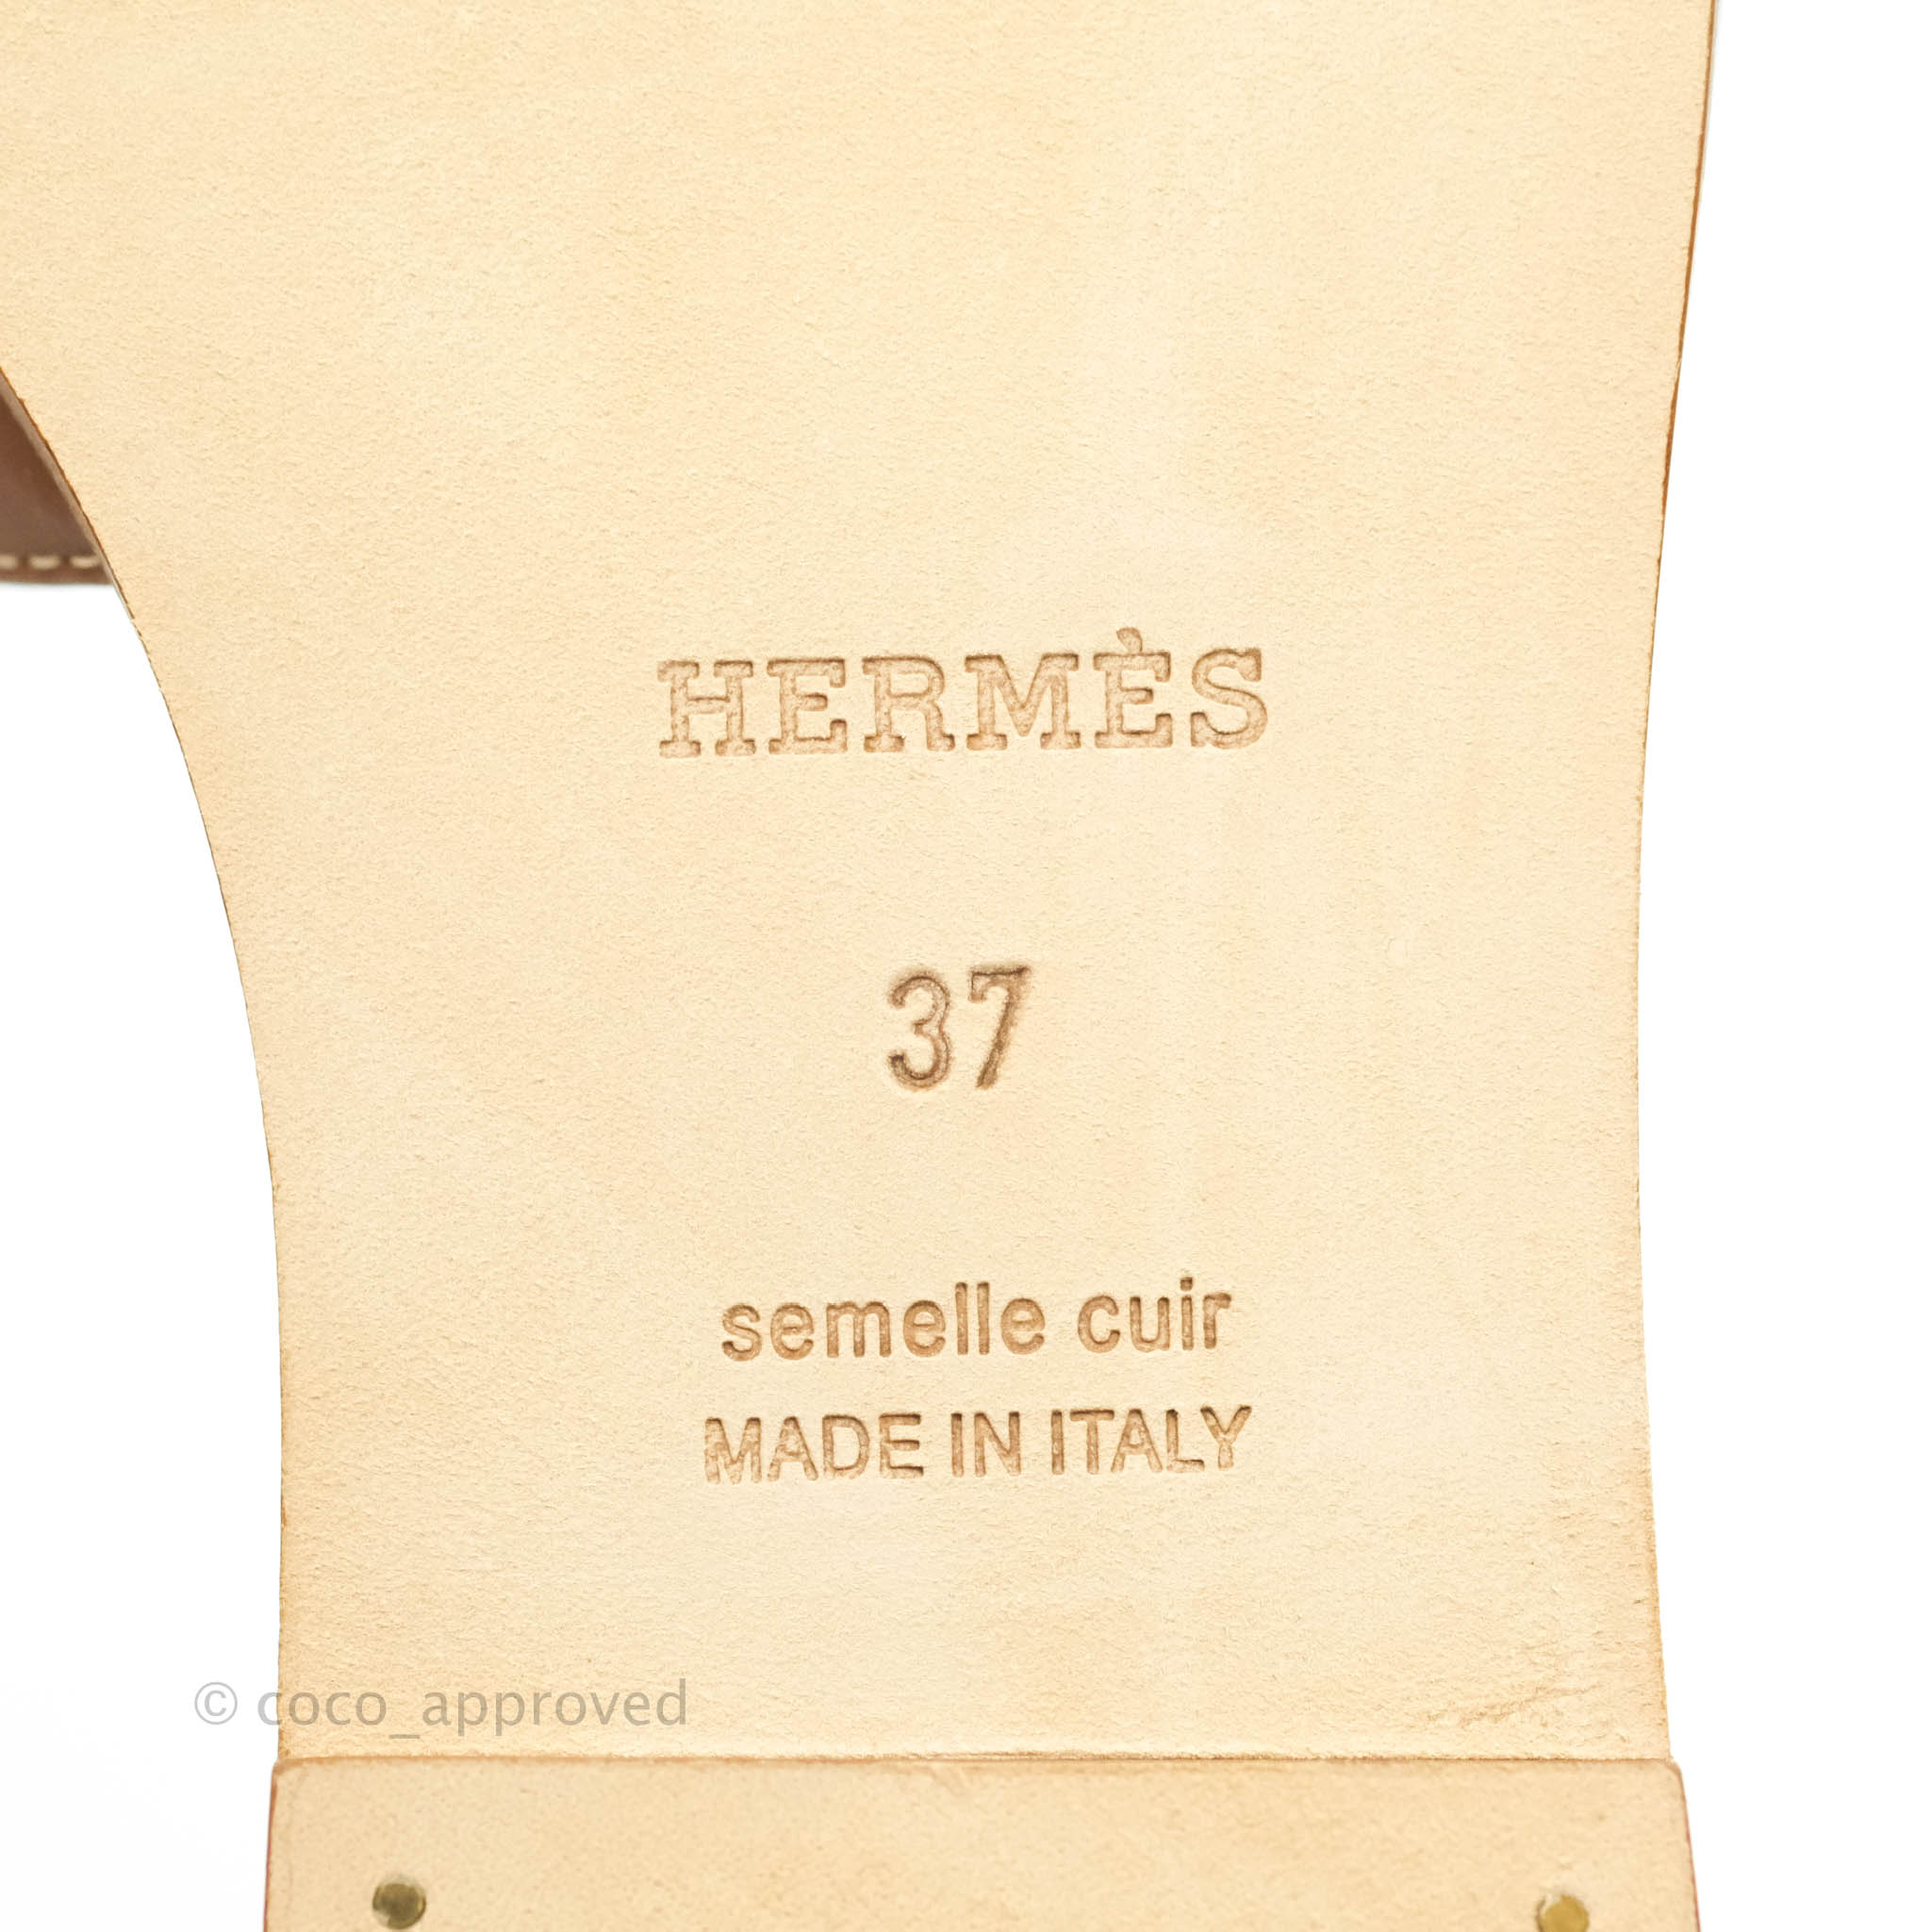 Hermès Oran Sandals in Lizard Sesame Size 37 – Coco Approved Studio